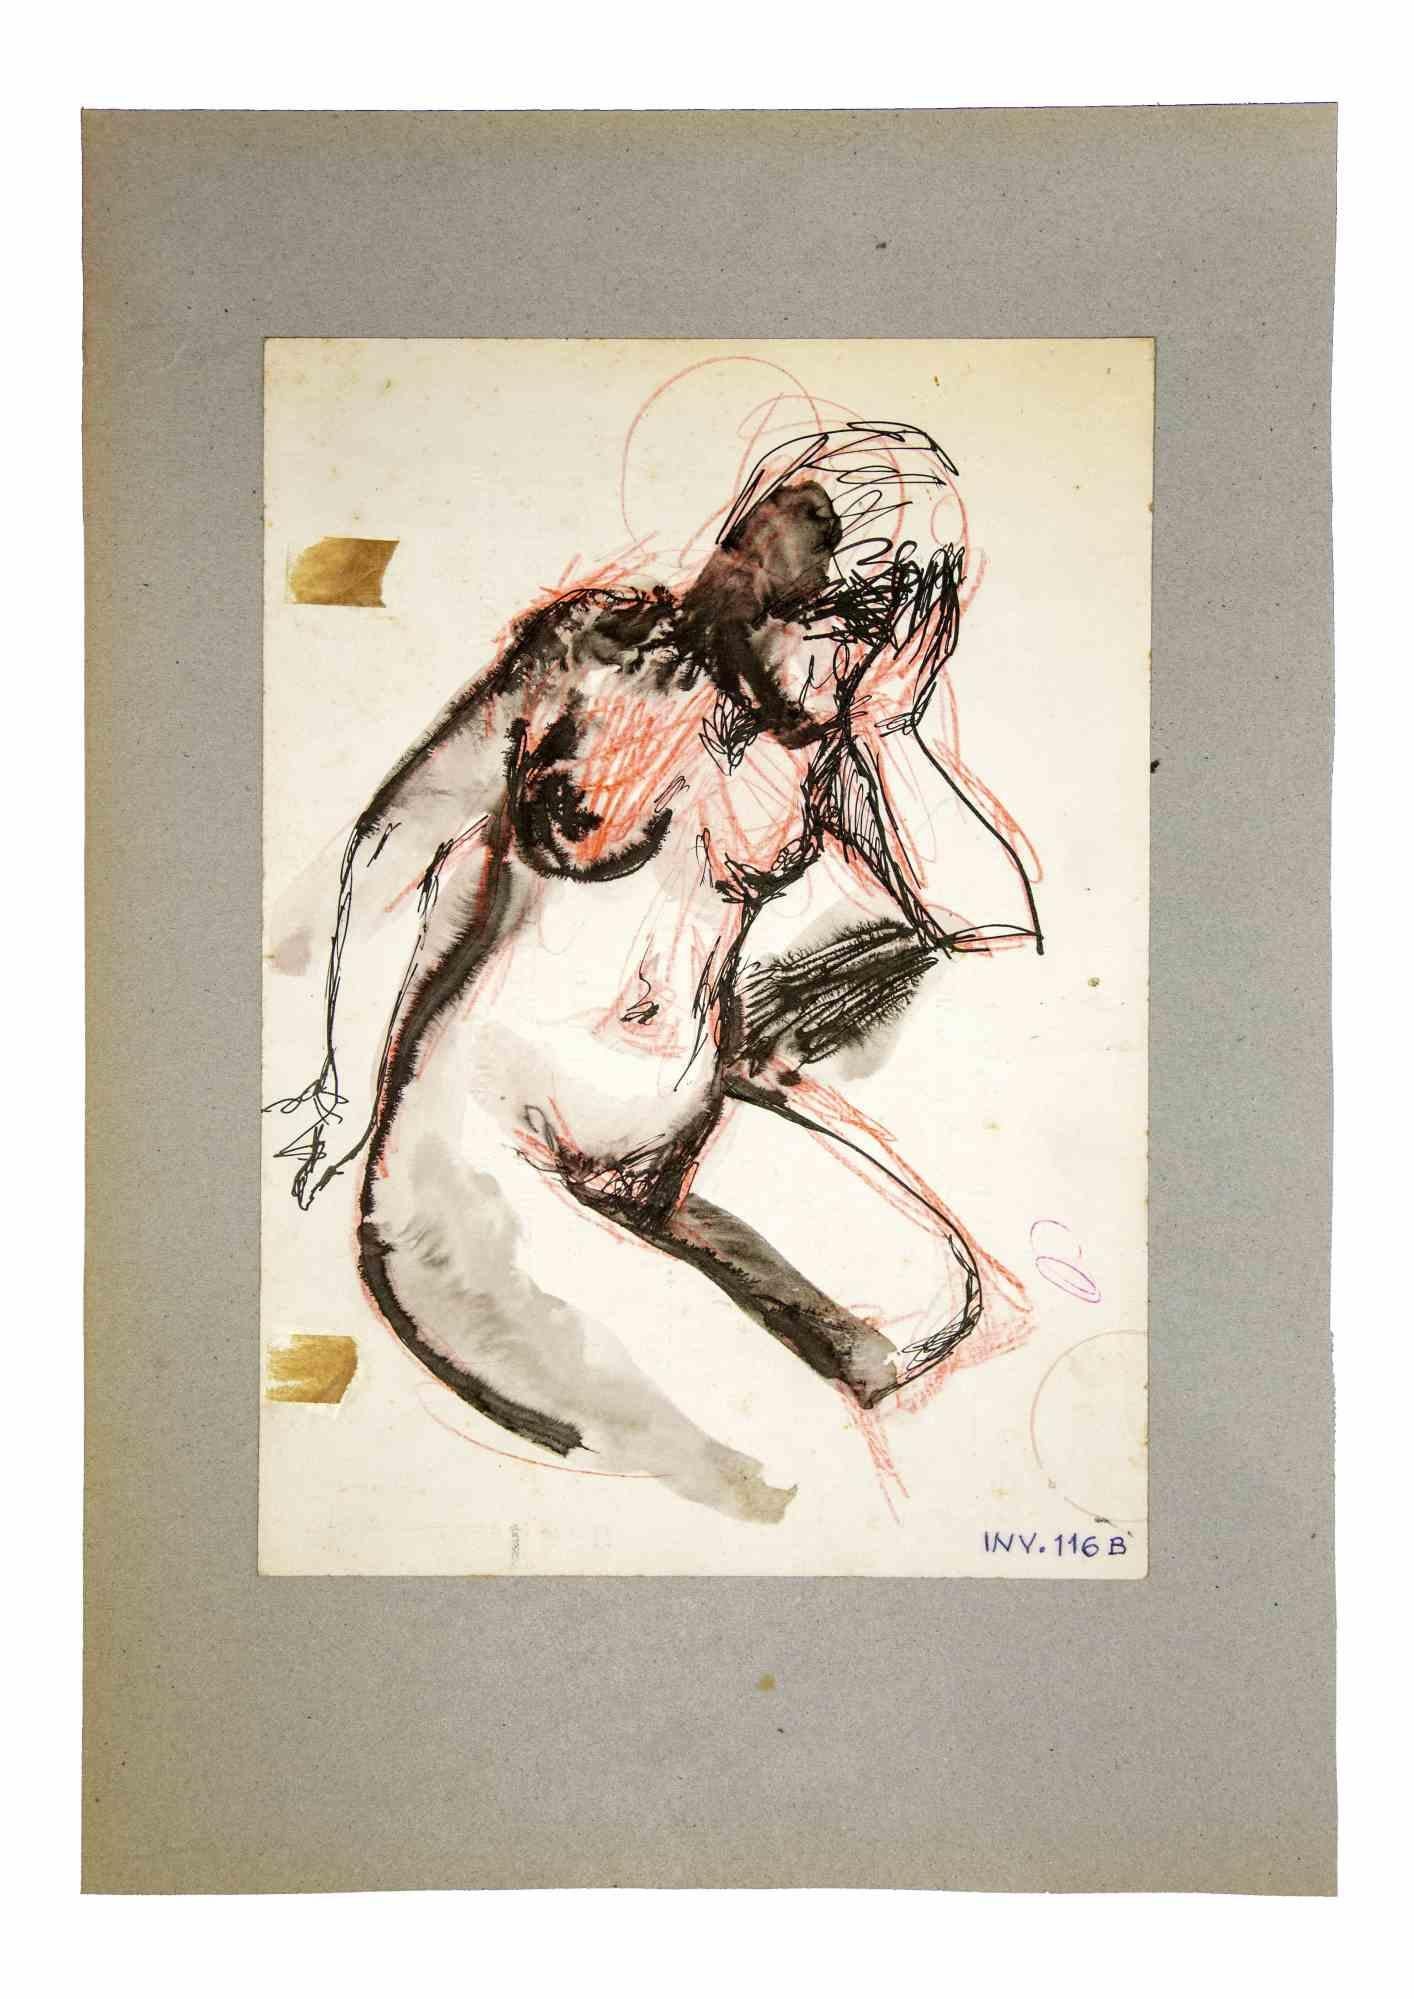 Nude ist ein Originalkunstwerk, das in den 1970er Jahren von dem italienischen zeitgenössischen Künstler  Leo Guida  (1992 - 2017).

Originalzeichnungen in China Ink, Kohle, Pastell und Aquarell auf Papier.

Guter Zustand, aber gealtert.

Das